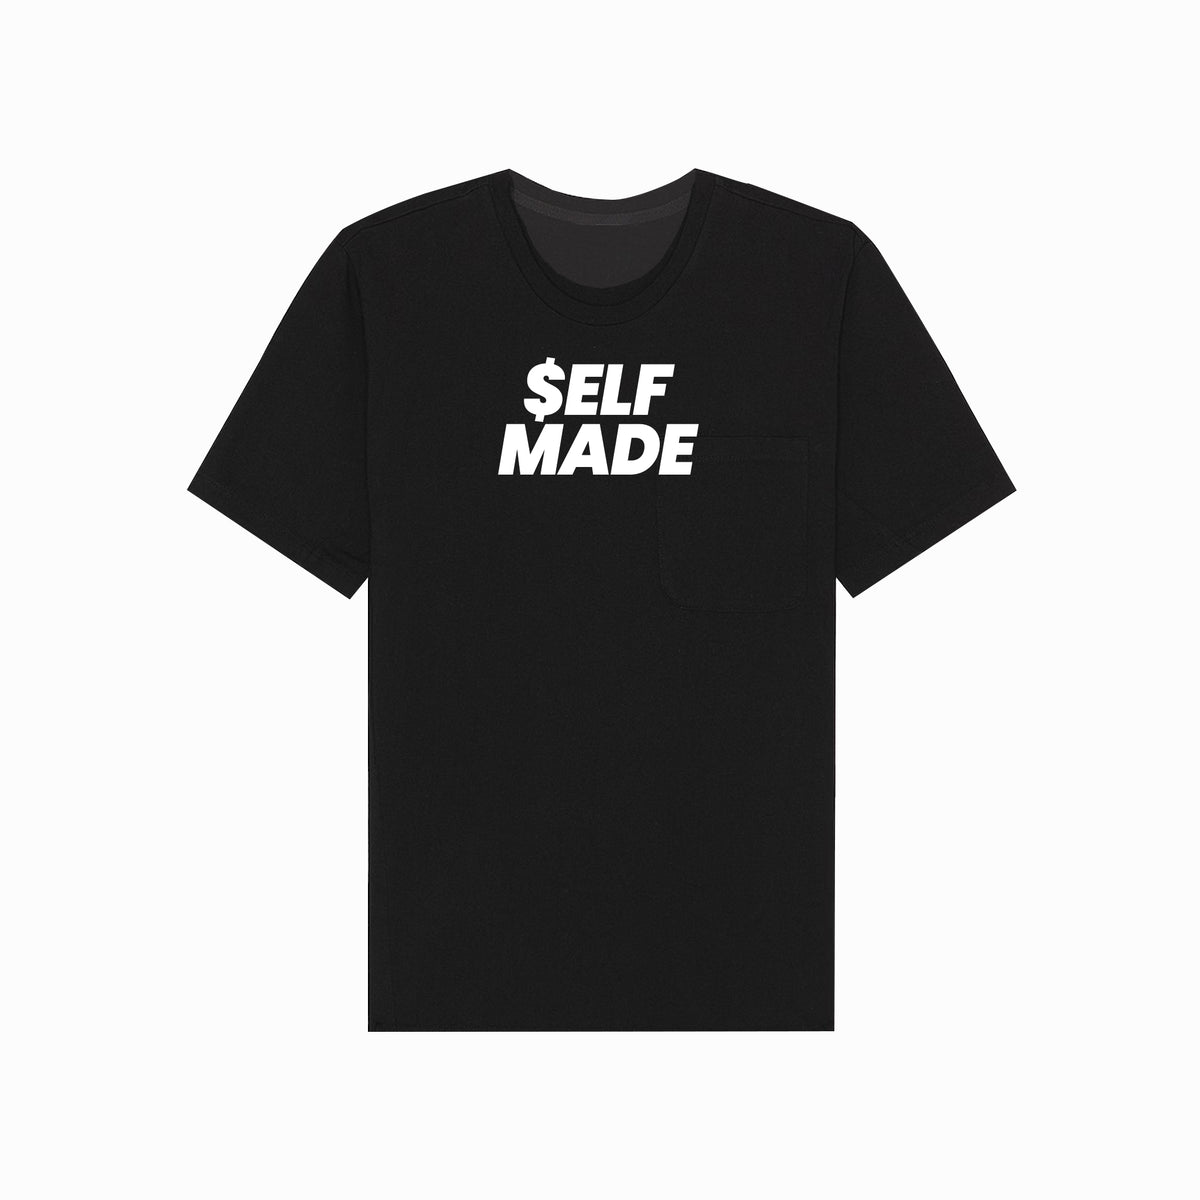 Self Made tshirt